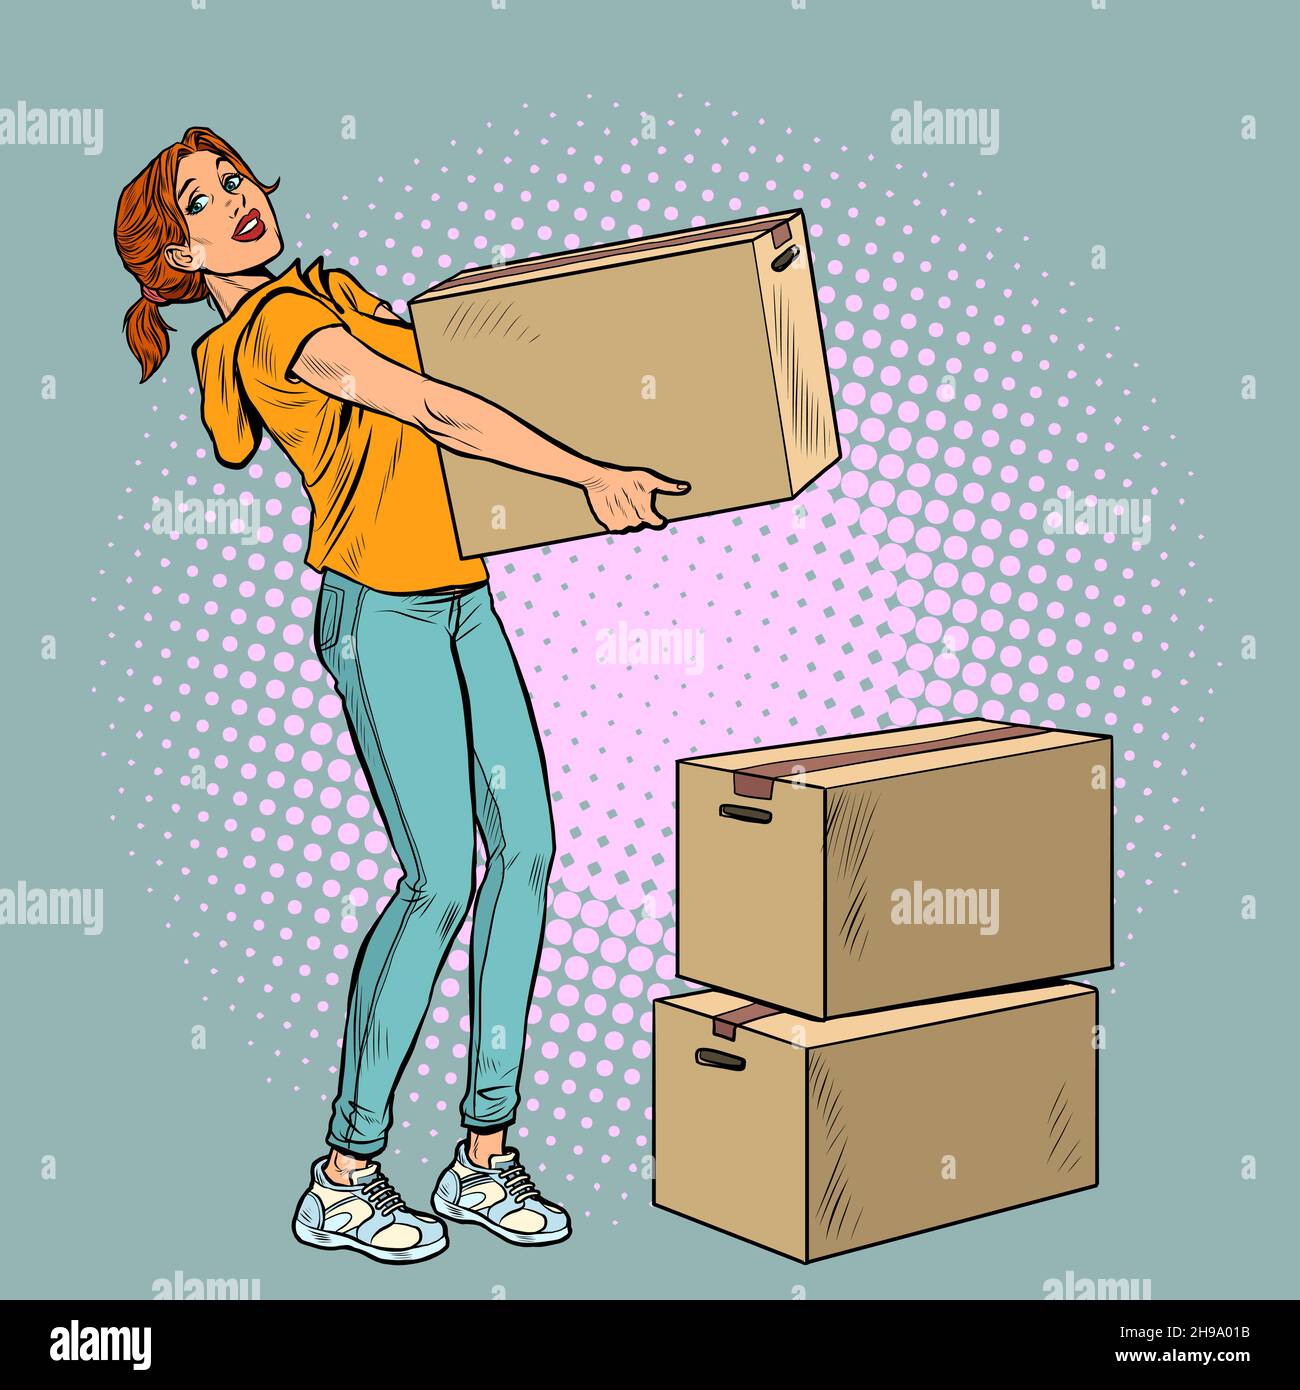 Junge Frau bewegt sich mit Kisten. Lieferung und Verpackung von persönlichen Sachen Stock Vektor